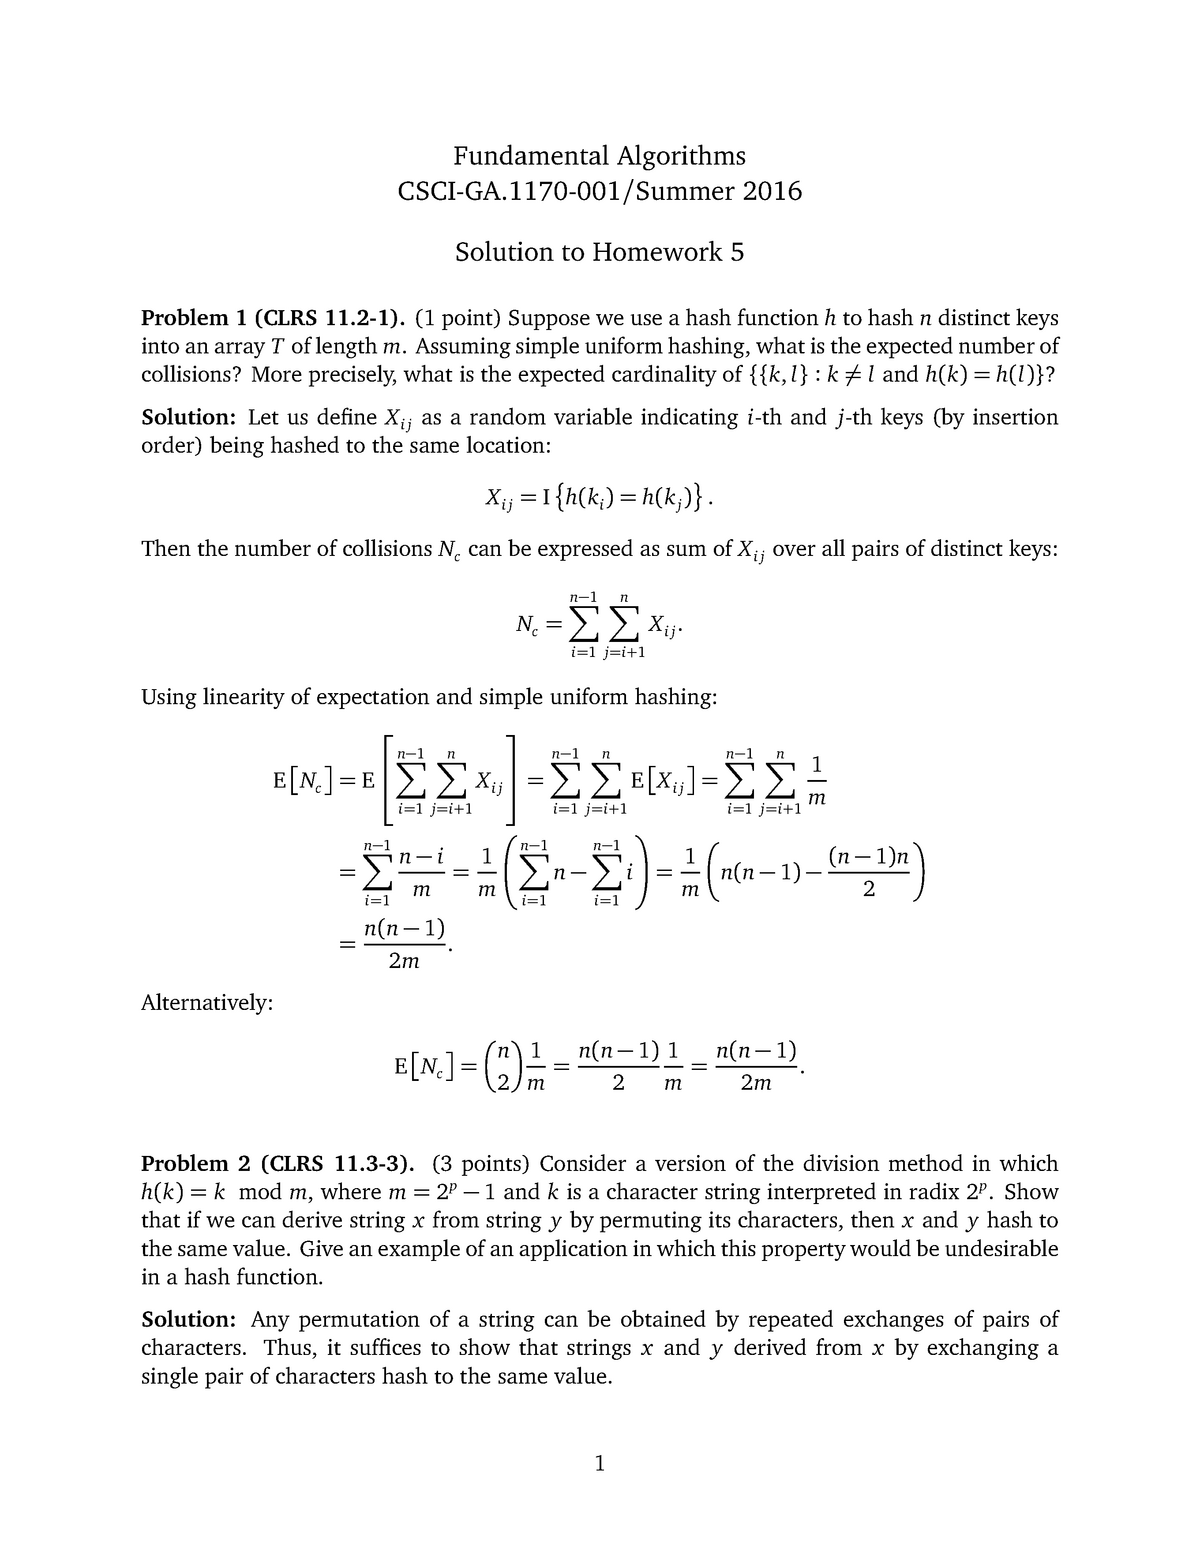 Hw05sol Assignment 5 Solution Fundamental Algorithms Csci Ga 1170 001 Summer Studocu